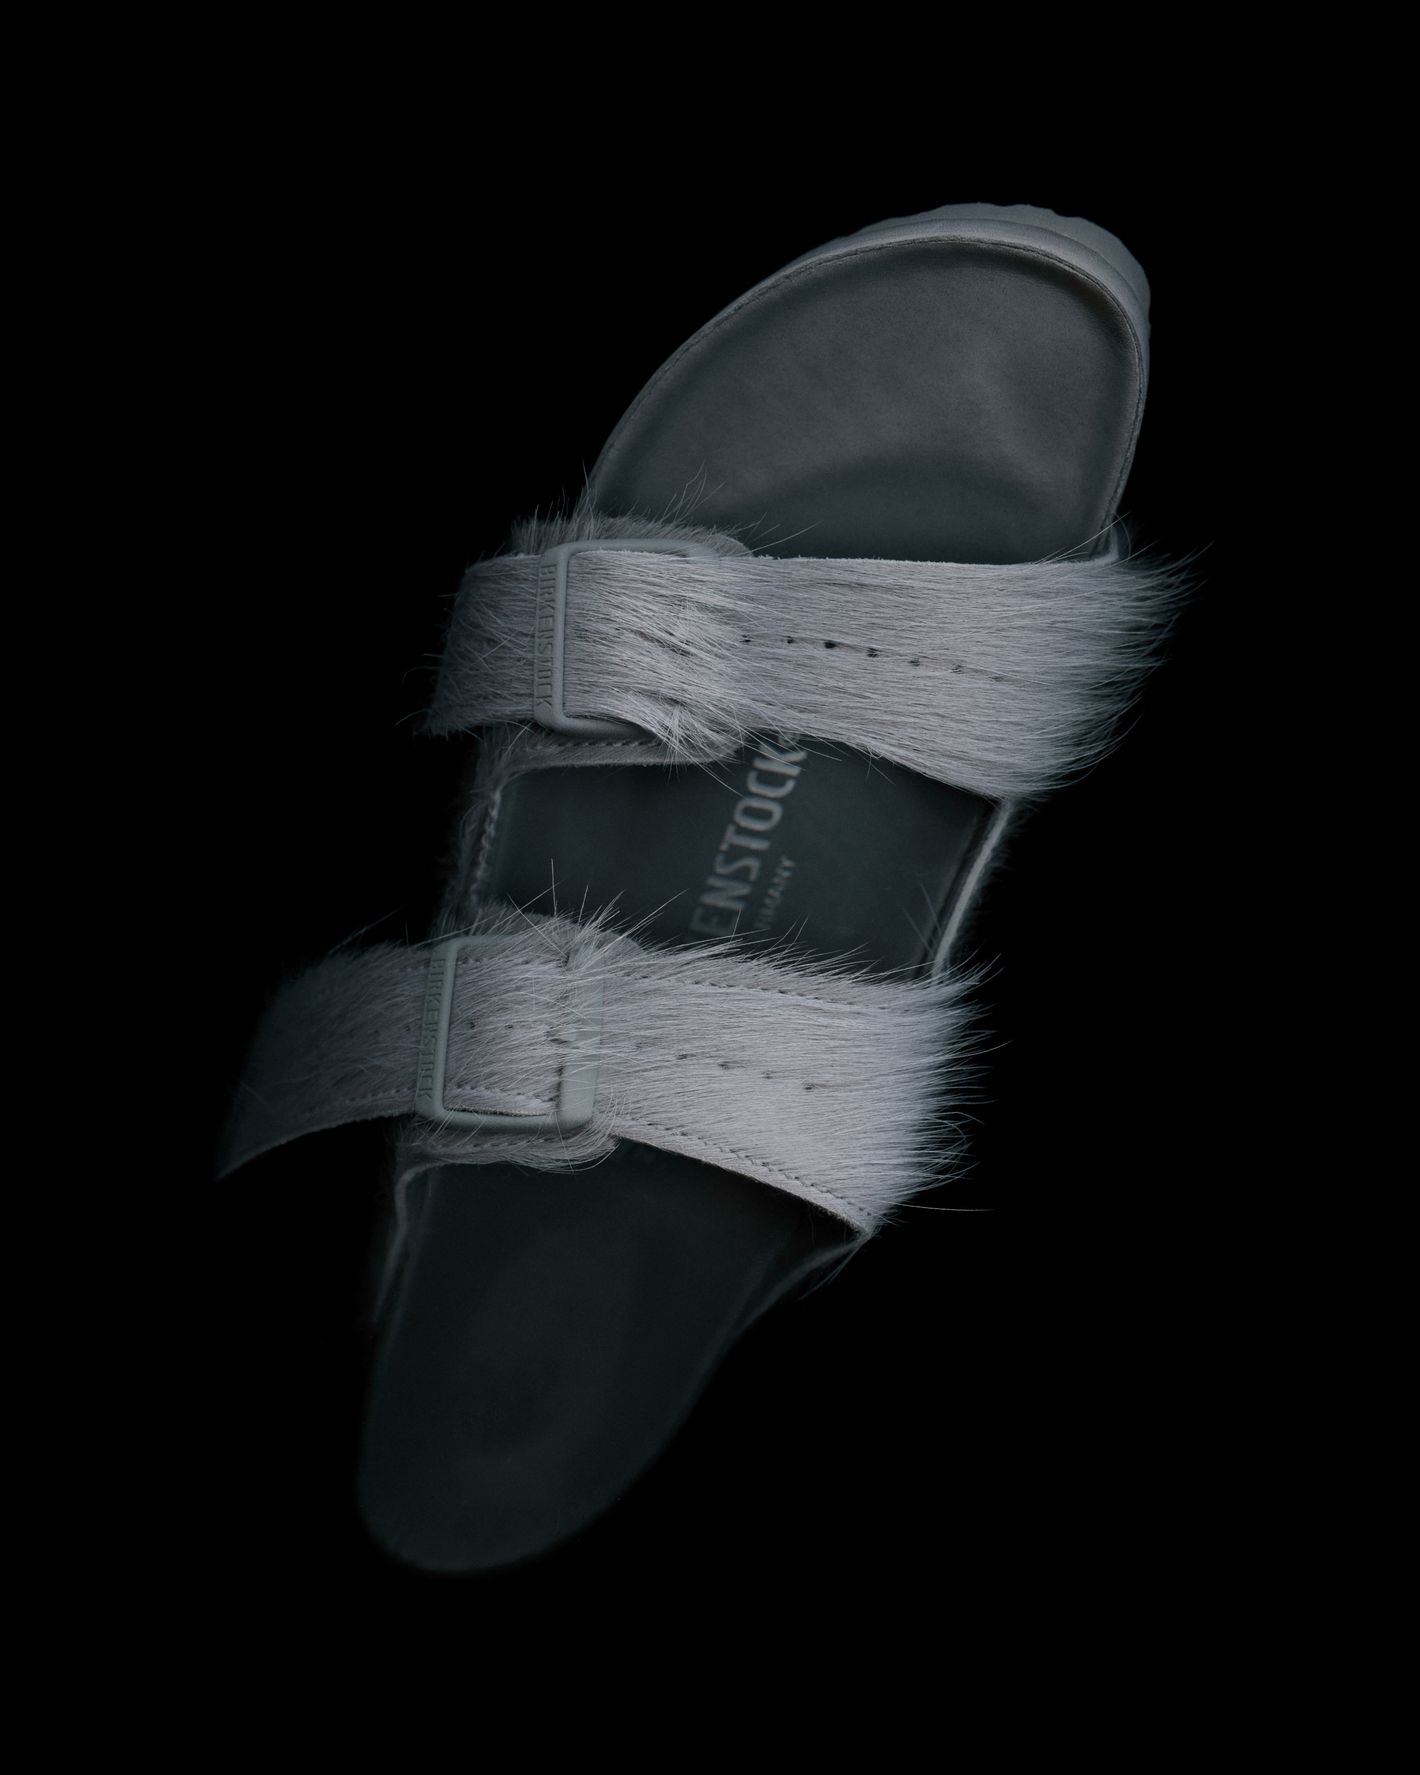 Ugly Sandal Trend: How Birkenstocks and Tevas Became Cool - Vox